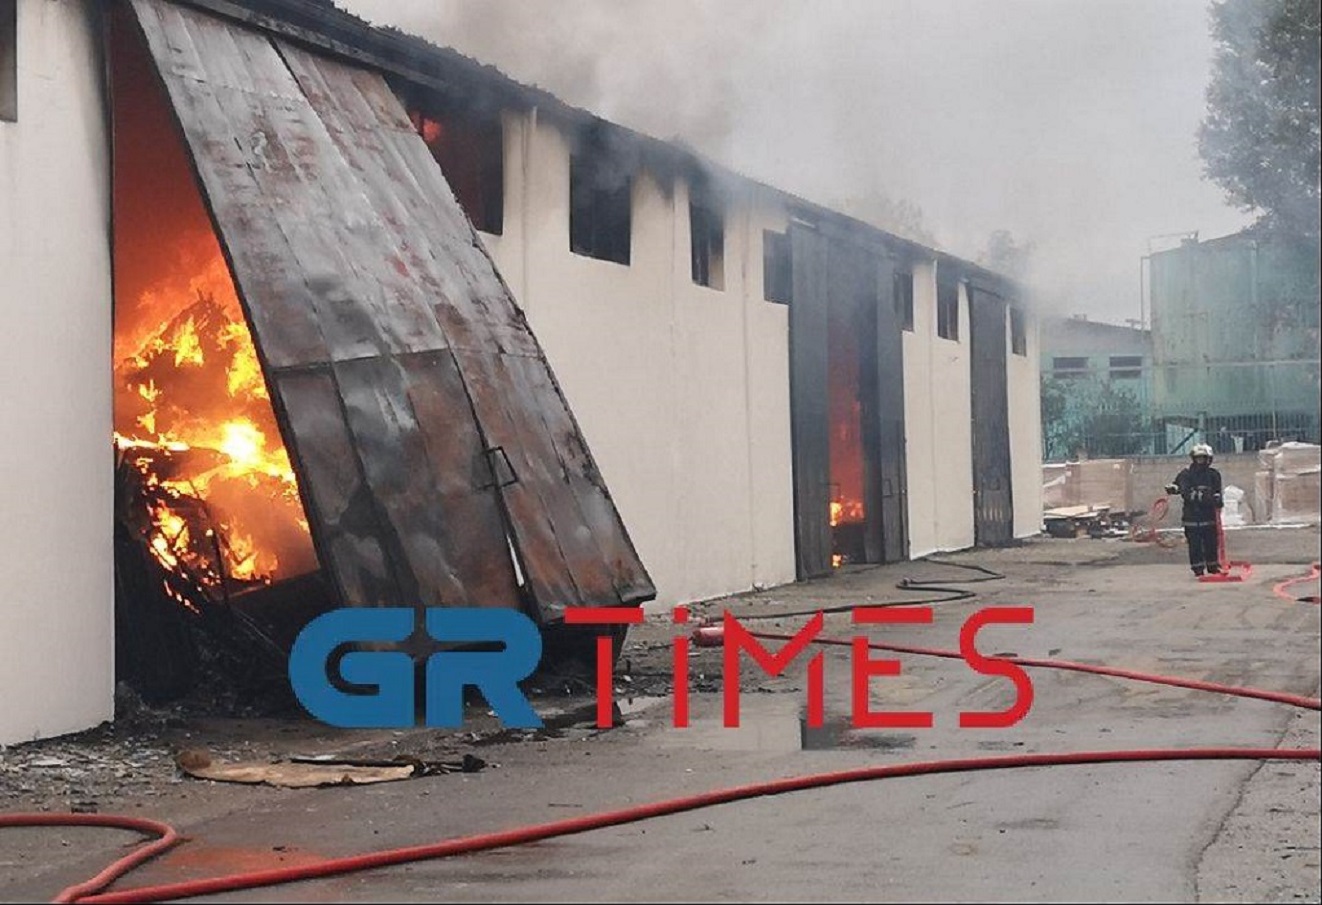 Θεσσαλονίκη: Φωτιά σε αποθήκη στο Καλοχώρι – Συνεχείς εκρήξεις και μαύροι καπνοί